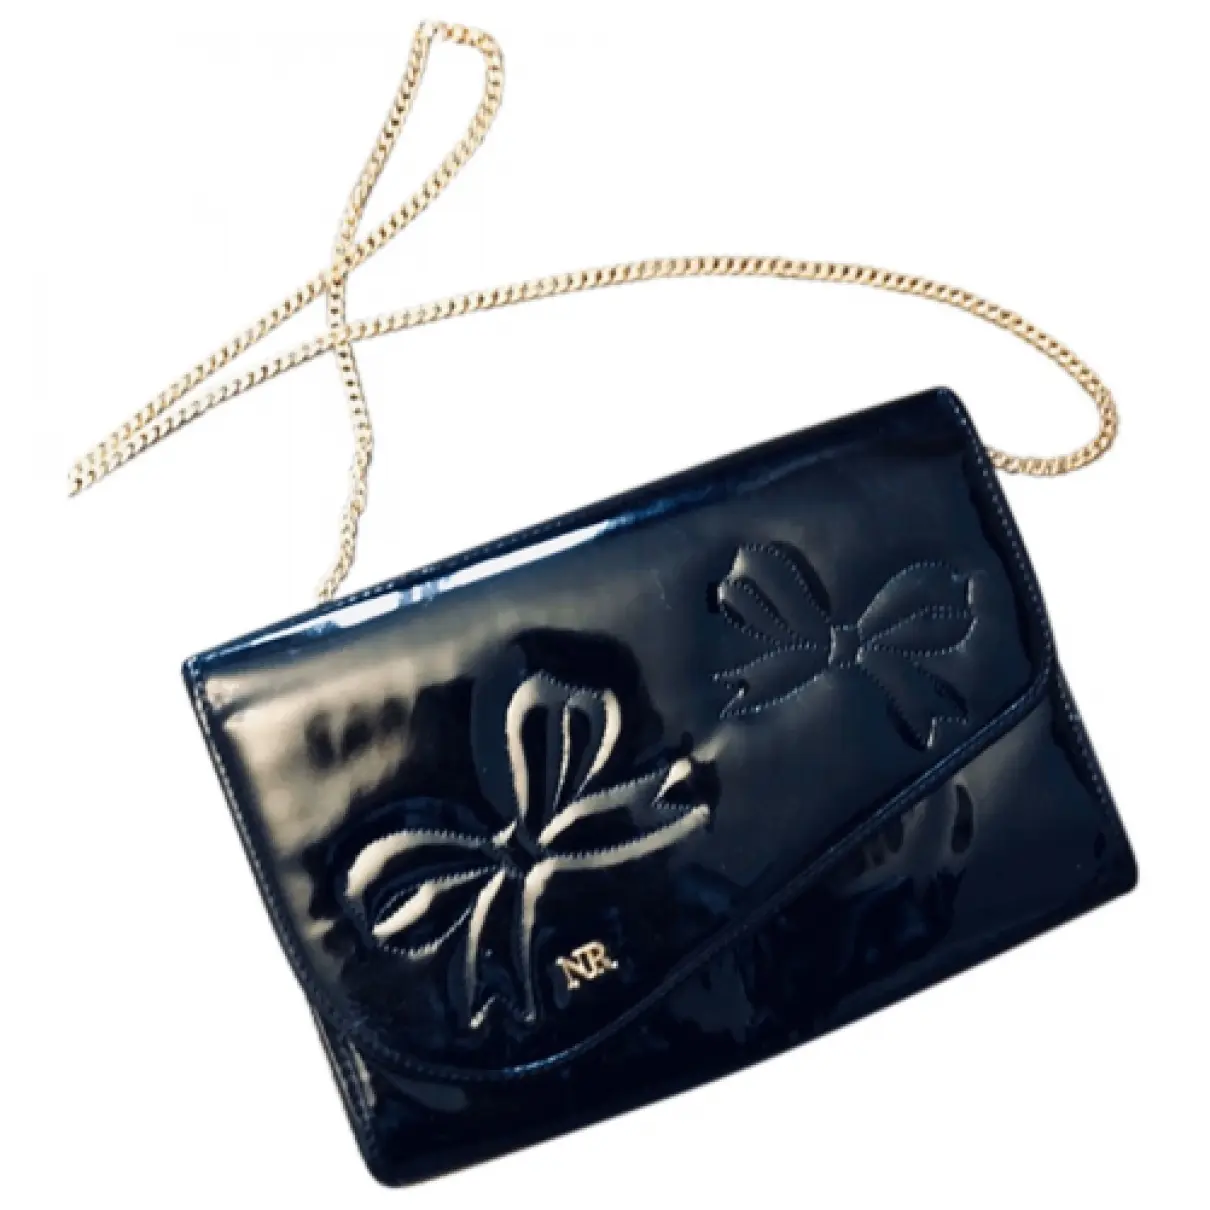 Patent leather handbag Nina Ricci - Vintage